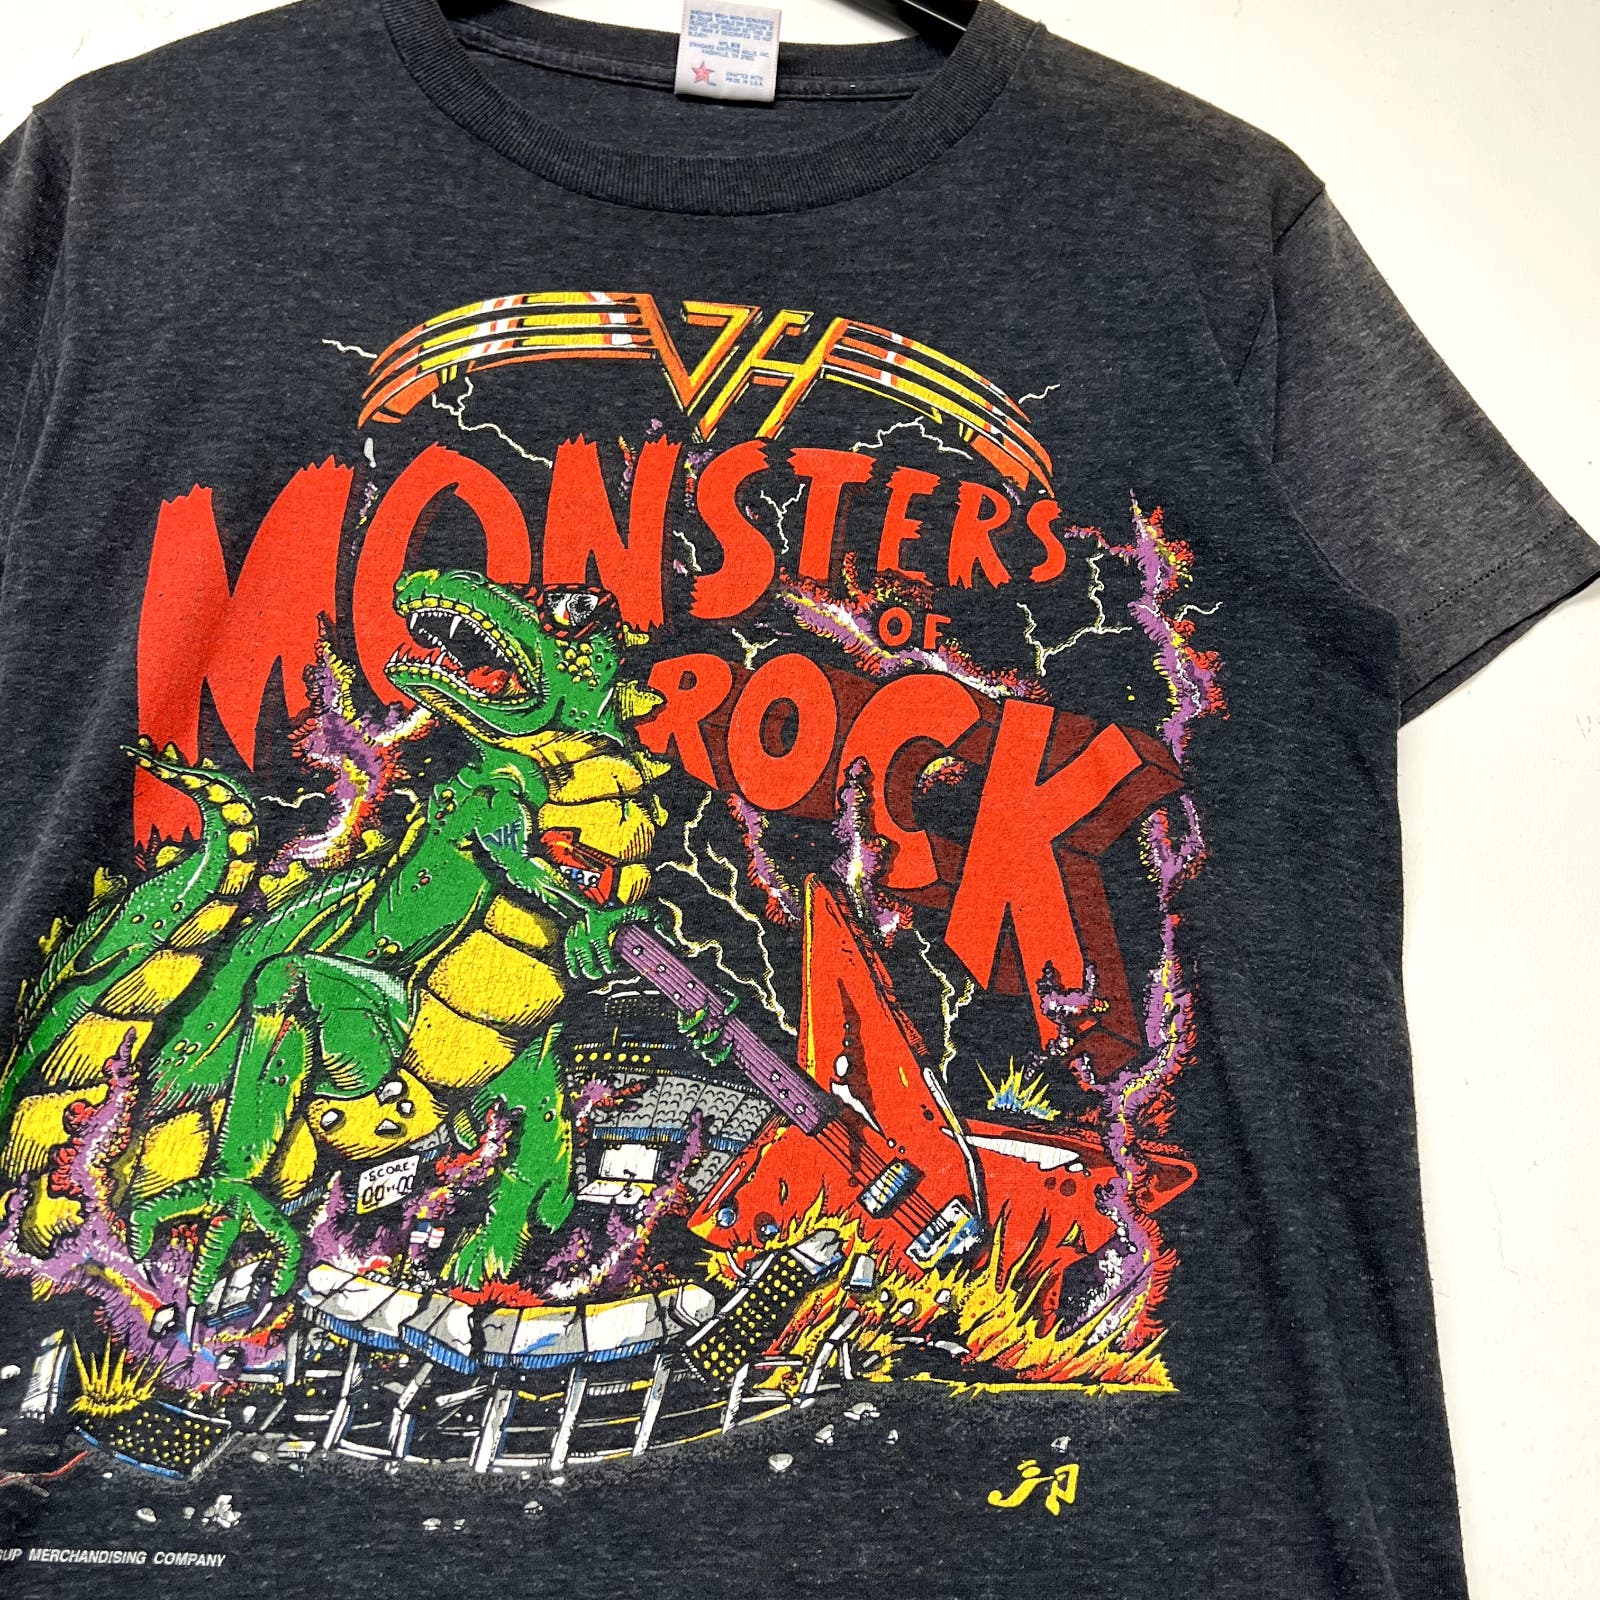 1988 Van Halen Monster of Rock T-shirt Size M